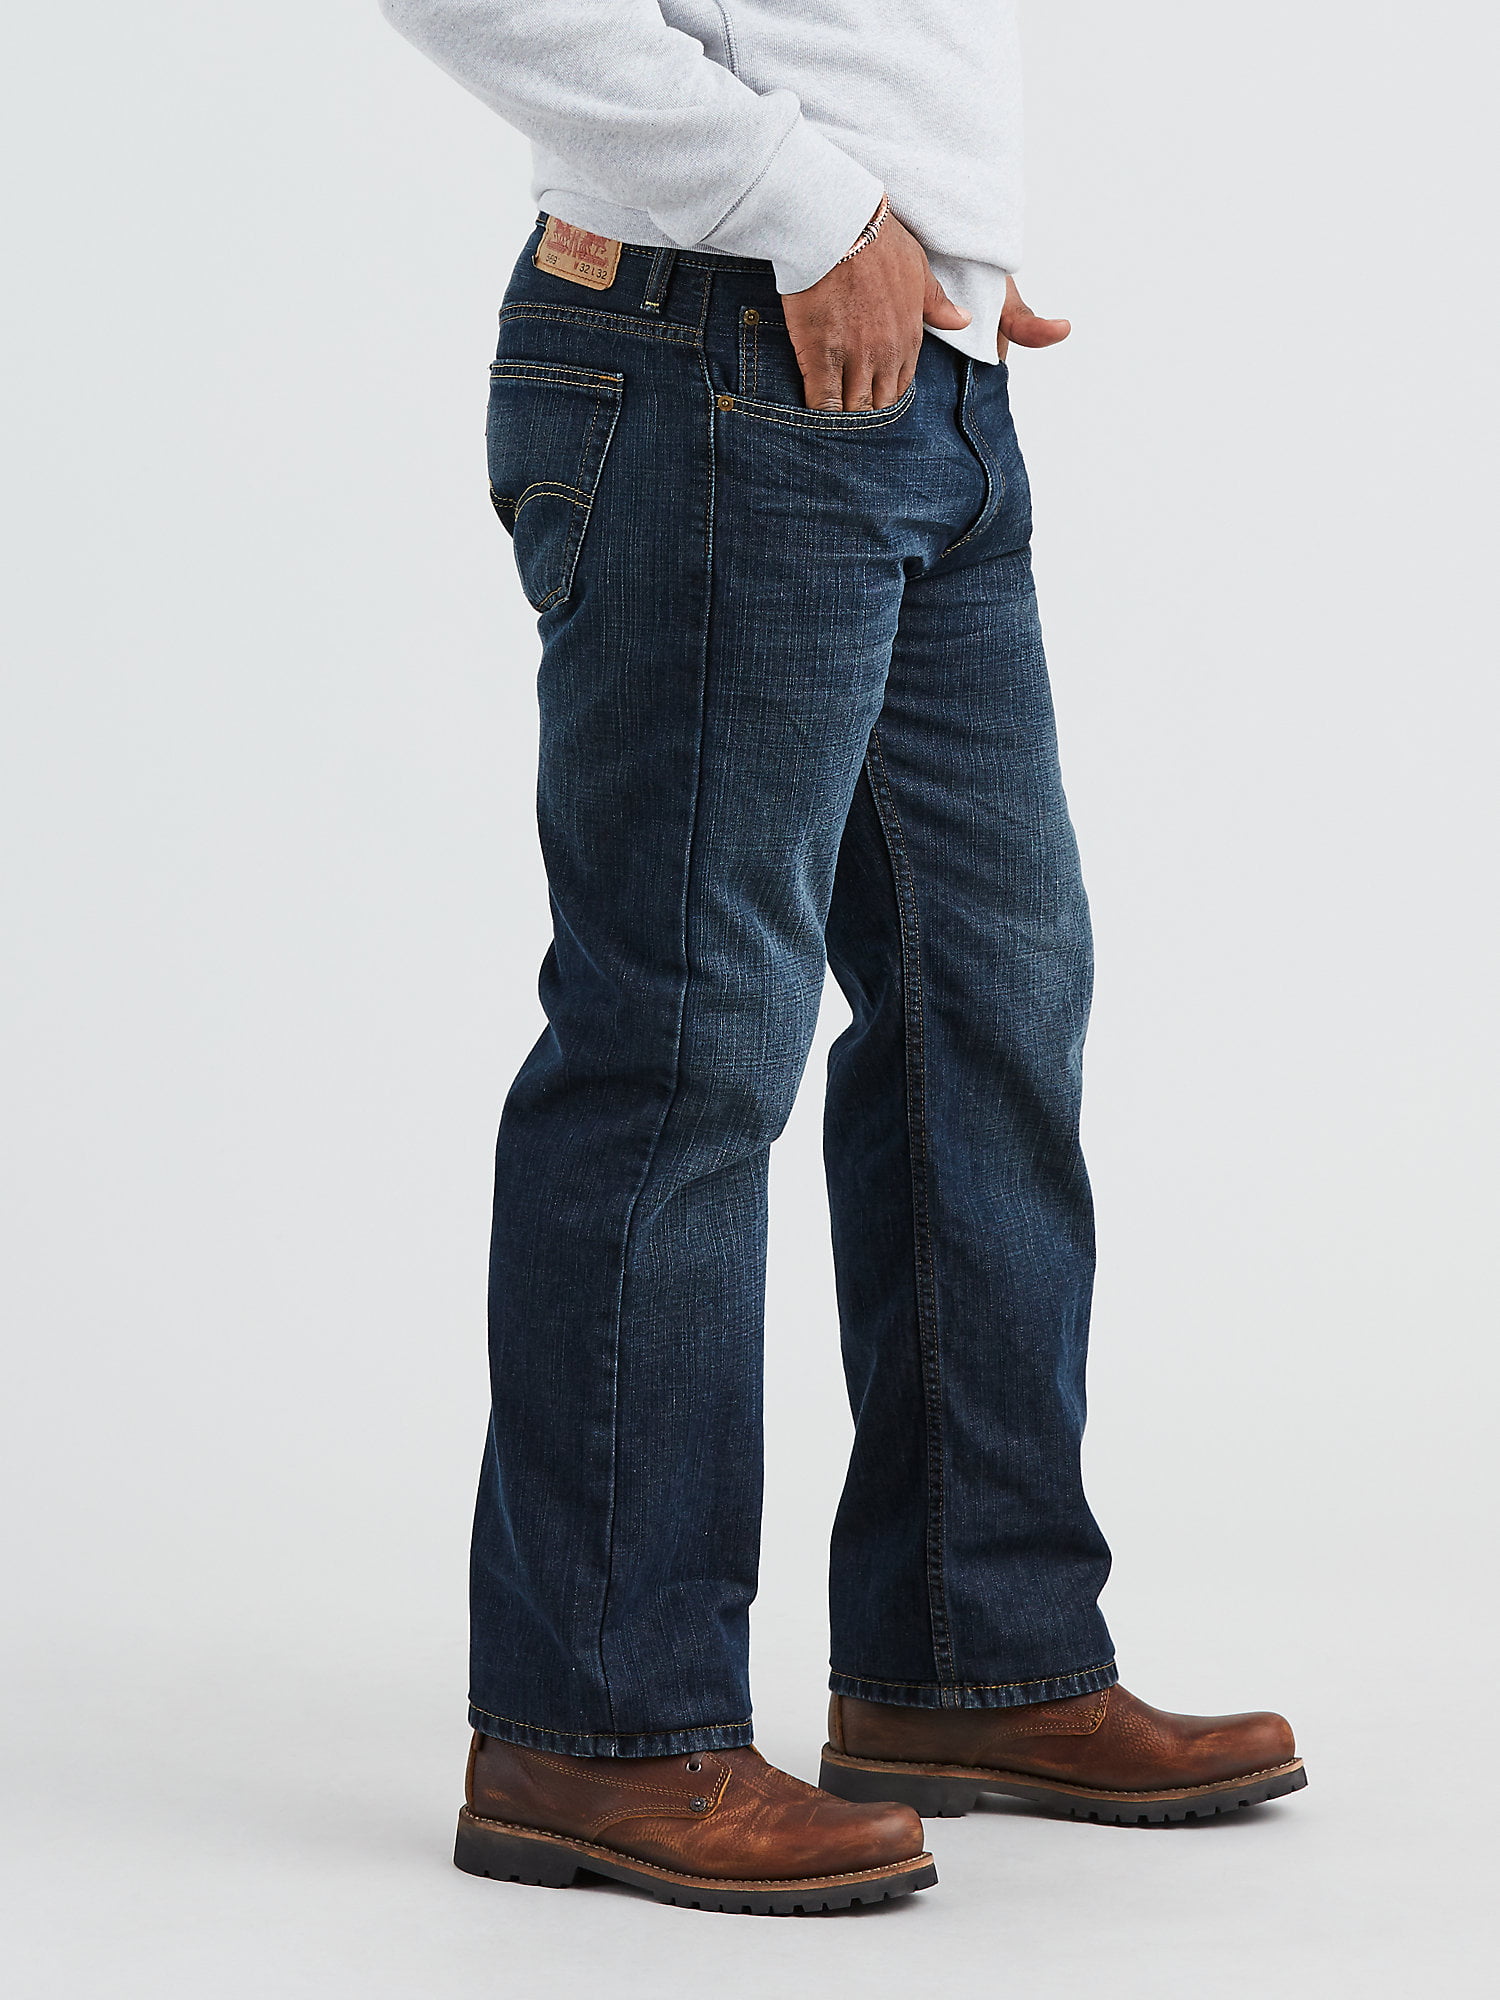 Levis 569 Jeans Mens 34x32 Blue Denim Cotton Straight Leg Loose